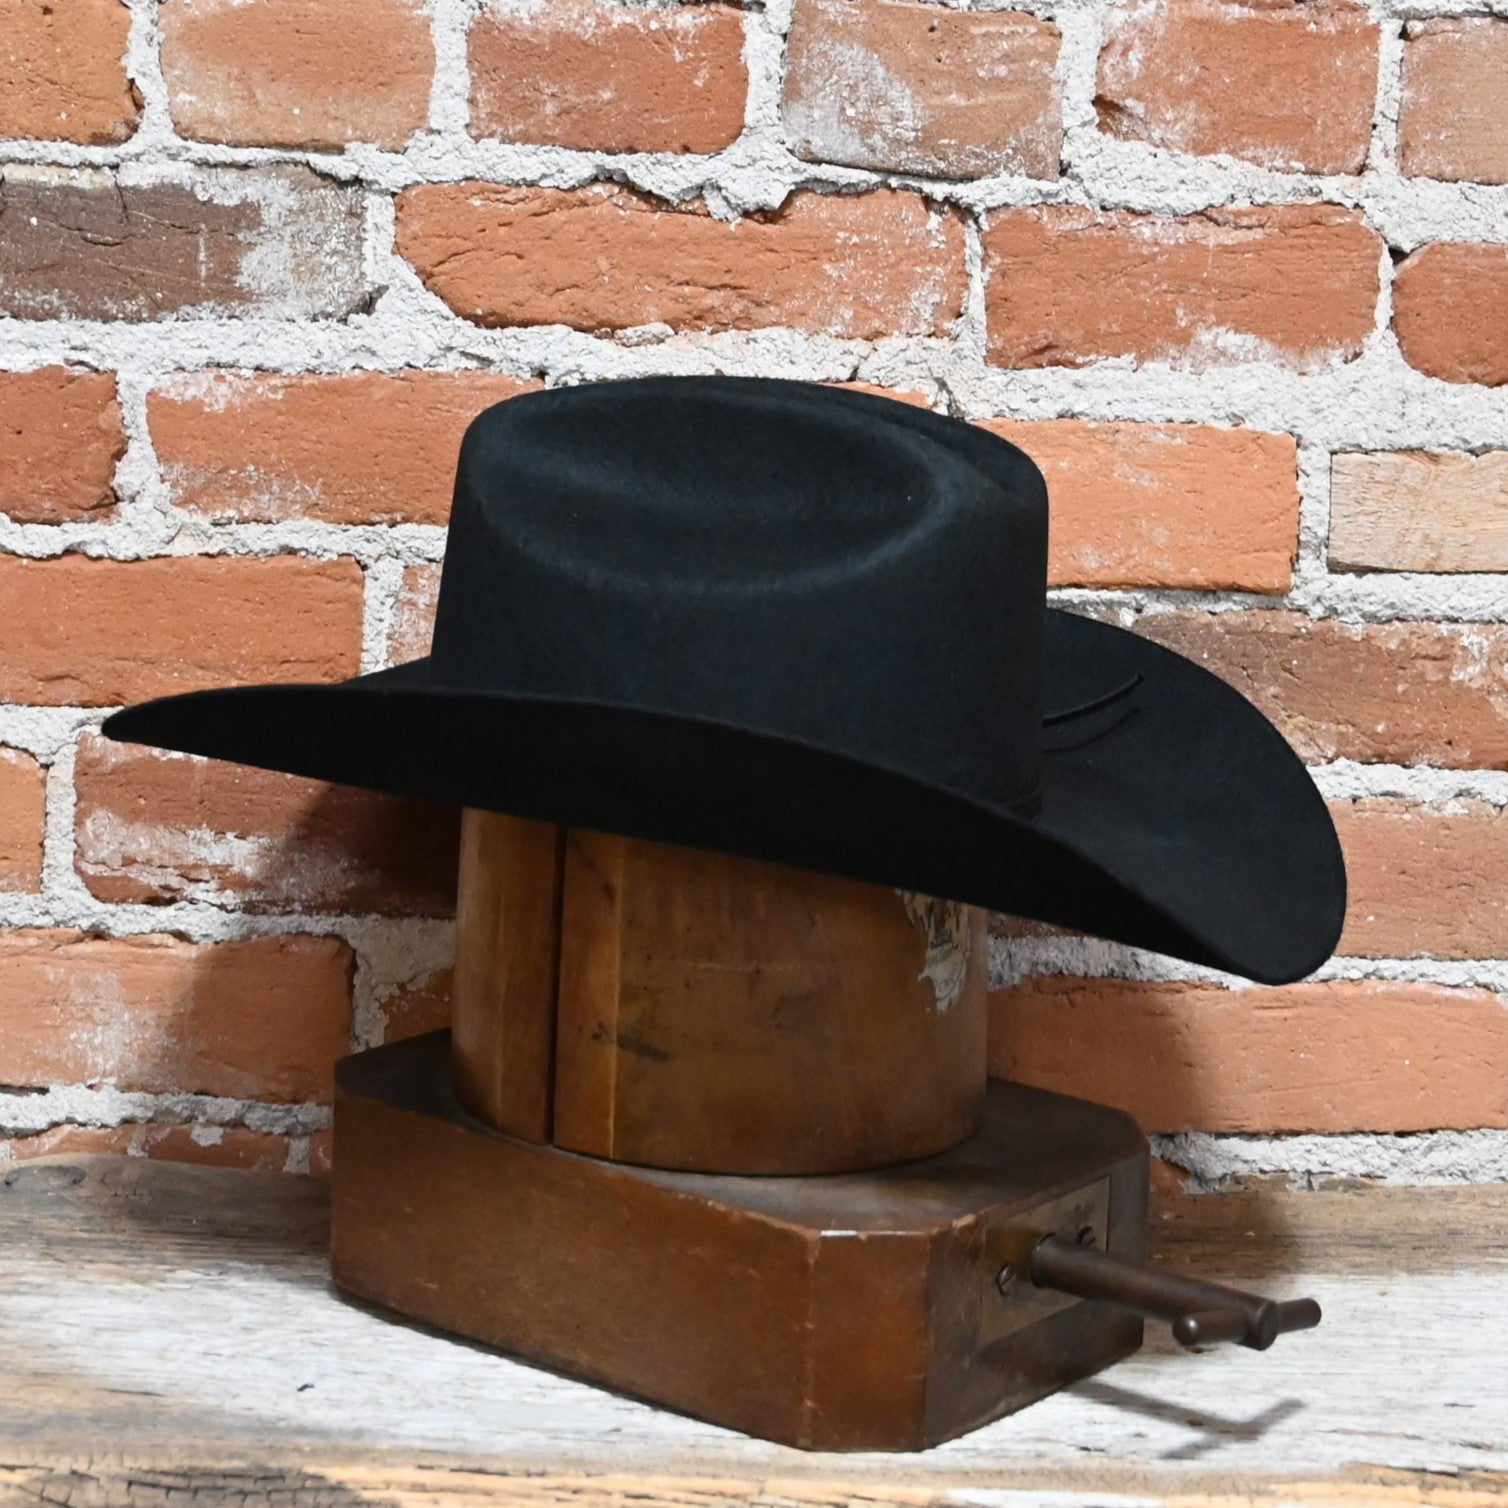 Resistol Crossroads Jr Felt Hat in Black view of hat